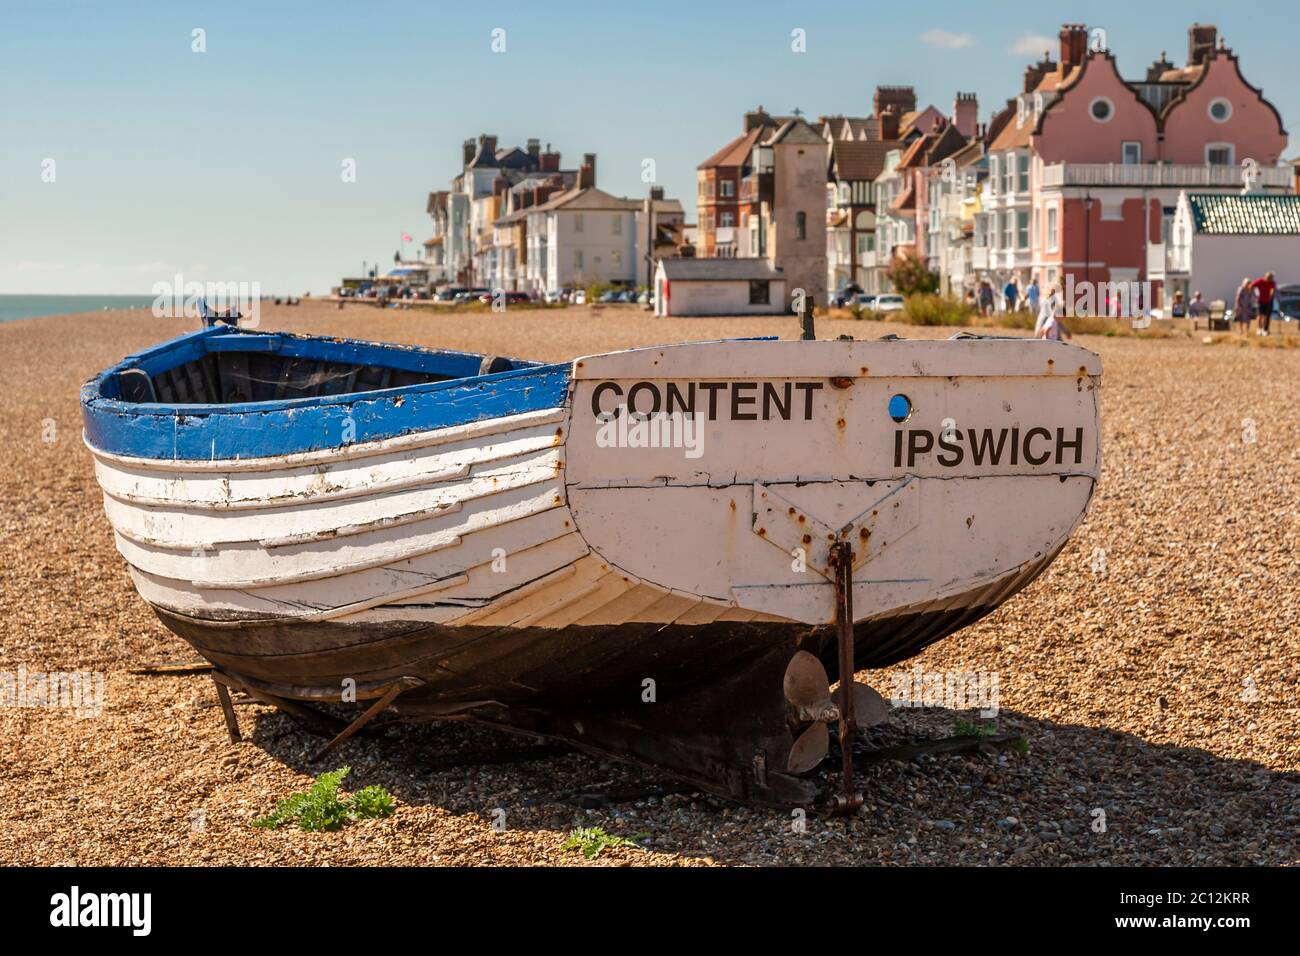 Una barca chiamata Content Ipswich si trova sulla spiaggia di East Suffolk, Inghilterra Foto Stock